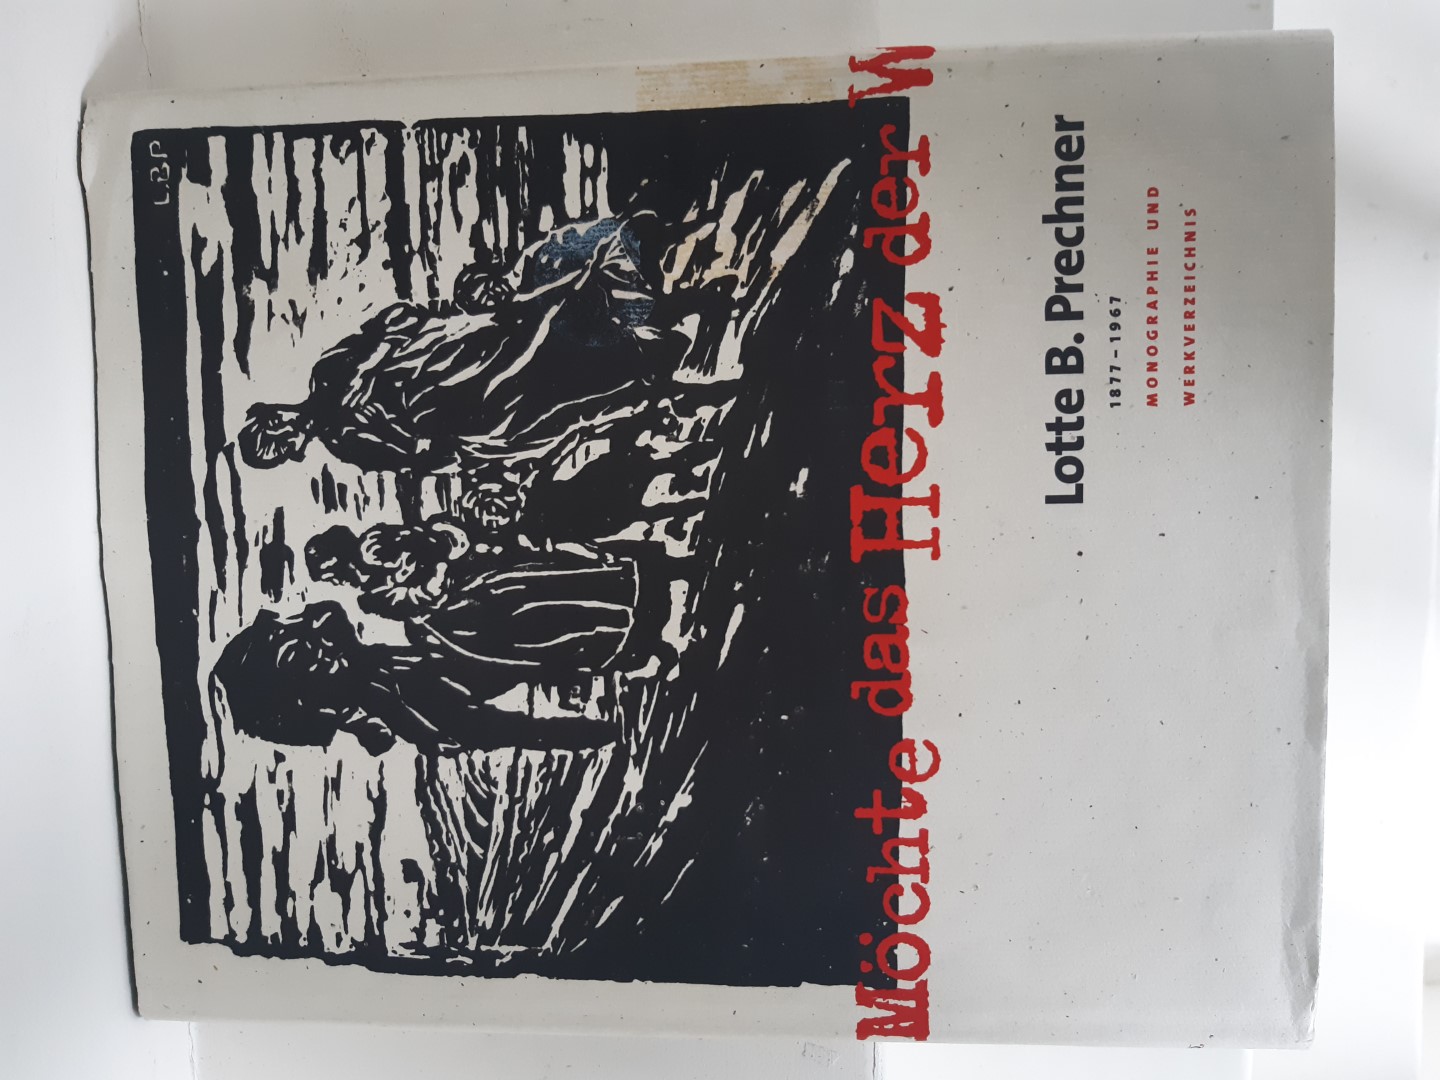 Prechner, Lotte B. - Jochimsen, Margarethe [Et Al.]. - Lotte B. Prechner 1877-1967: Monographie und Werkverzeichnis.